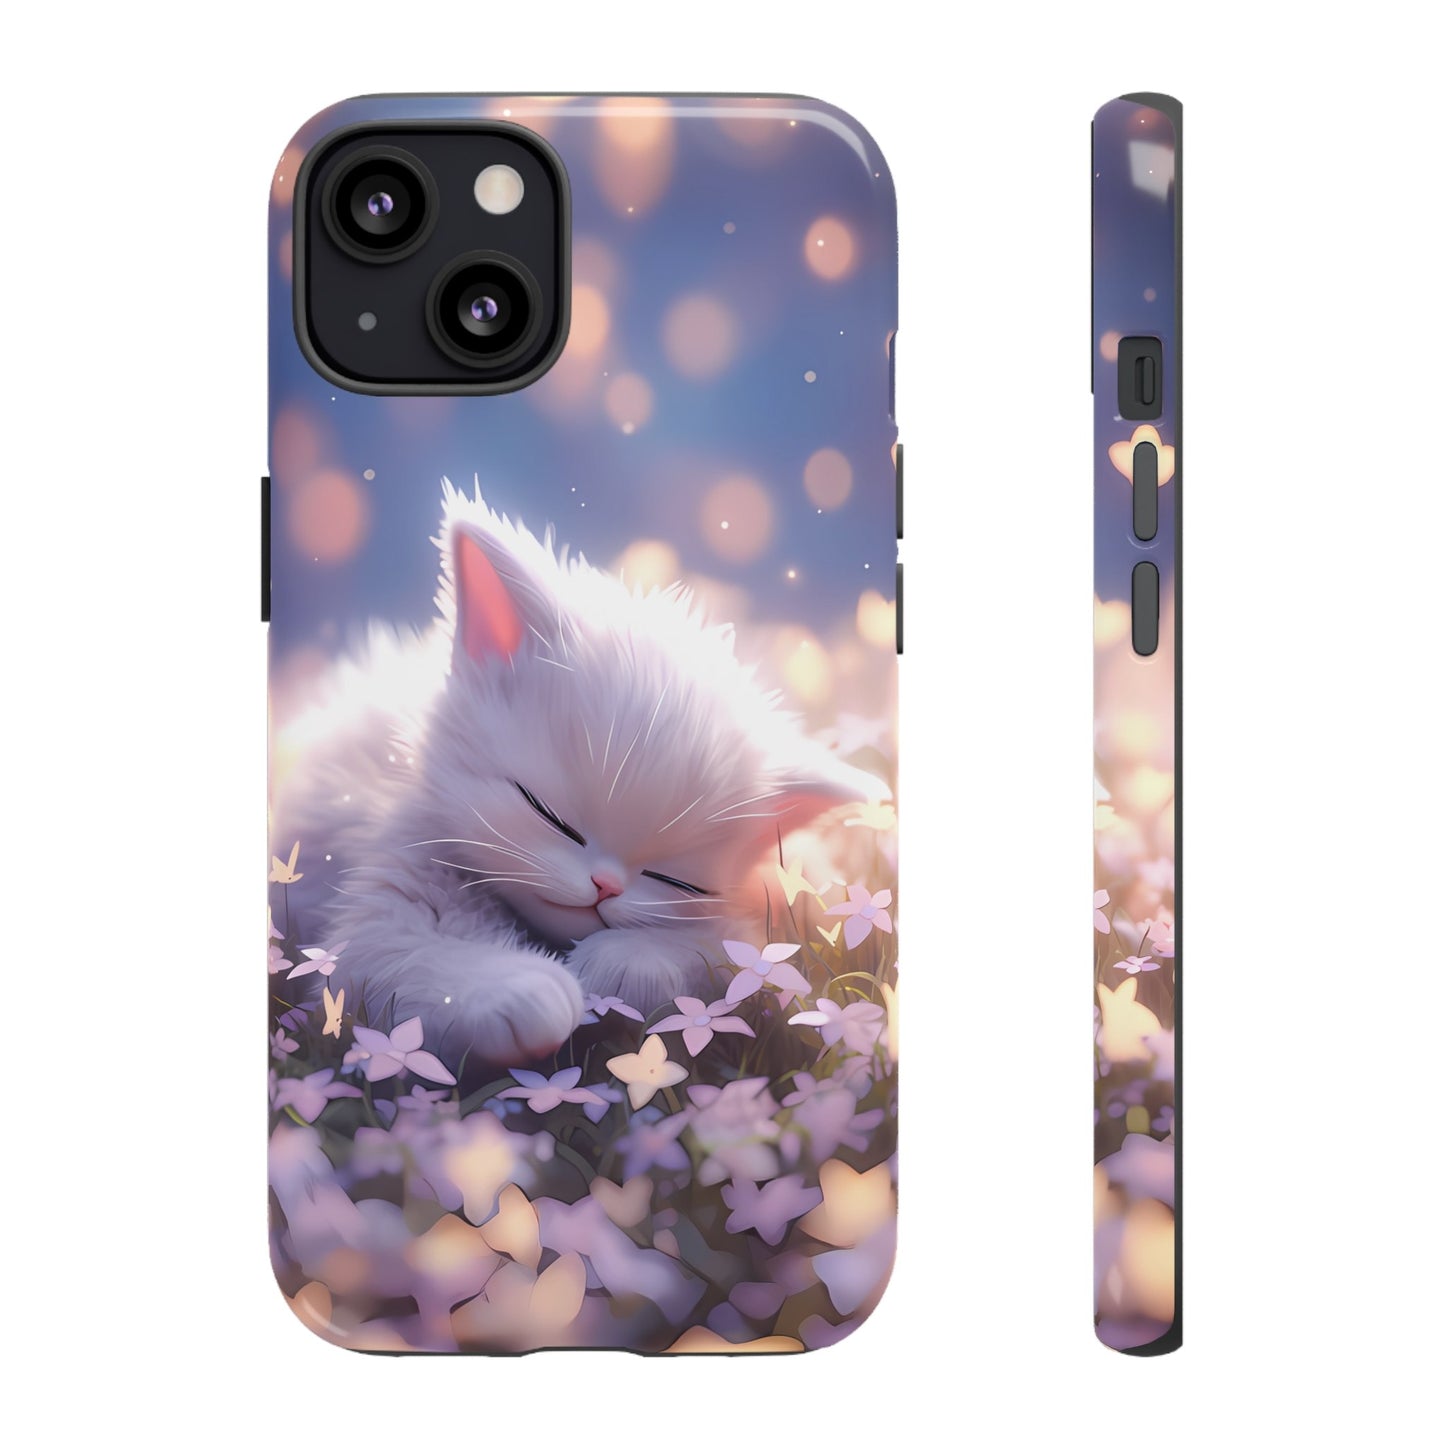 Sleepy Kitten | Hardshell Phone Case